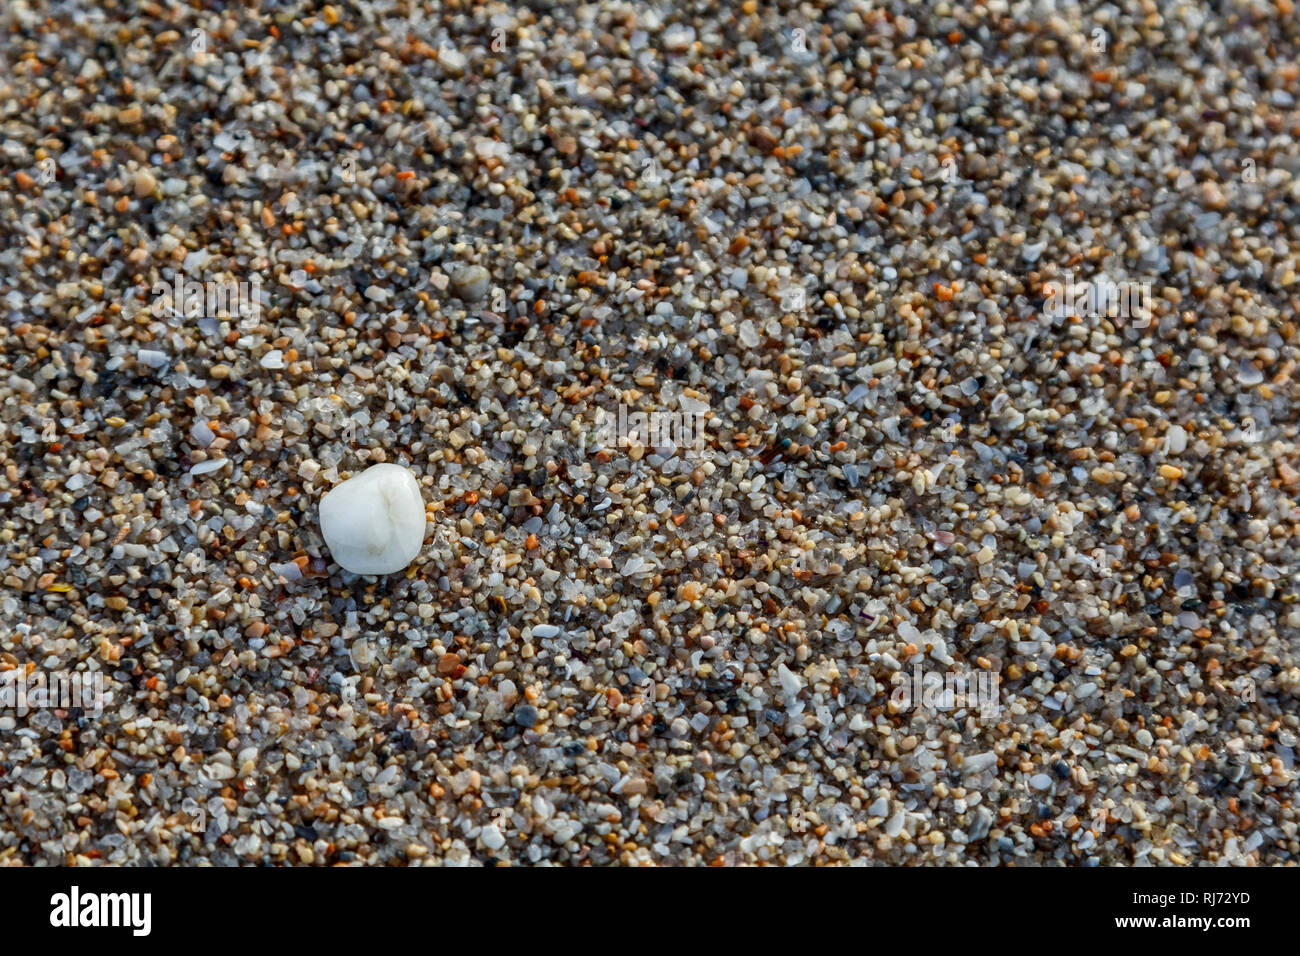 La sabbia, Kiesa und Muscheln findet man am Strand, Nahaufnahme, Foto Stock